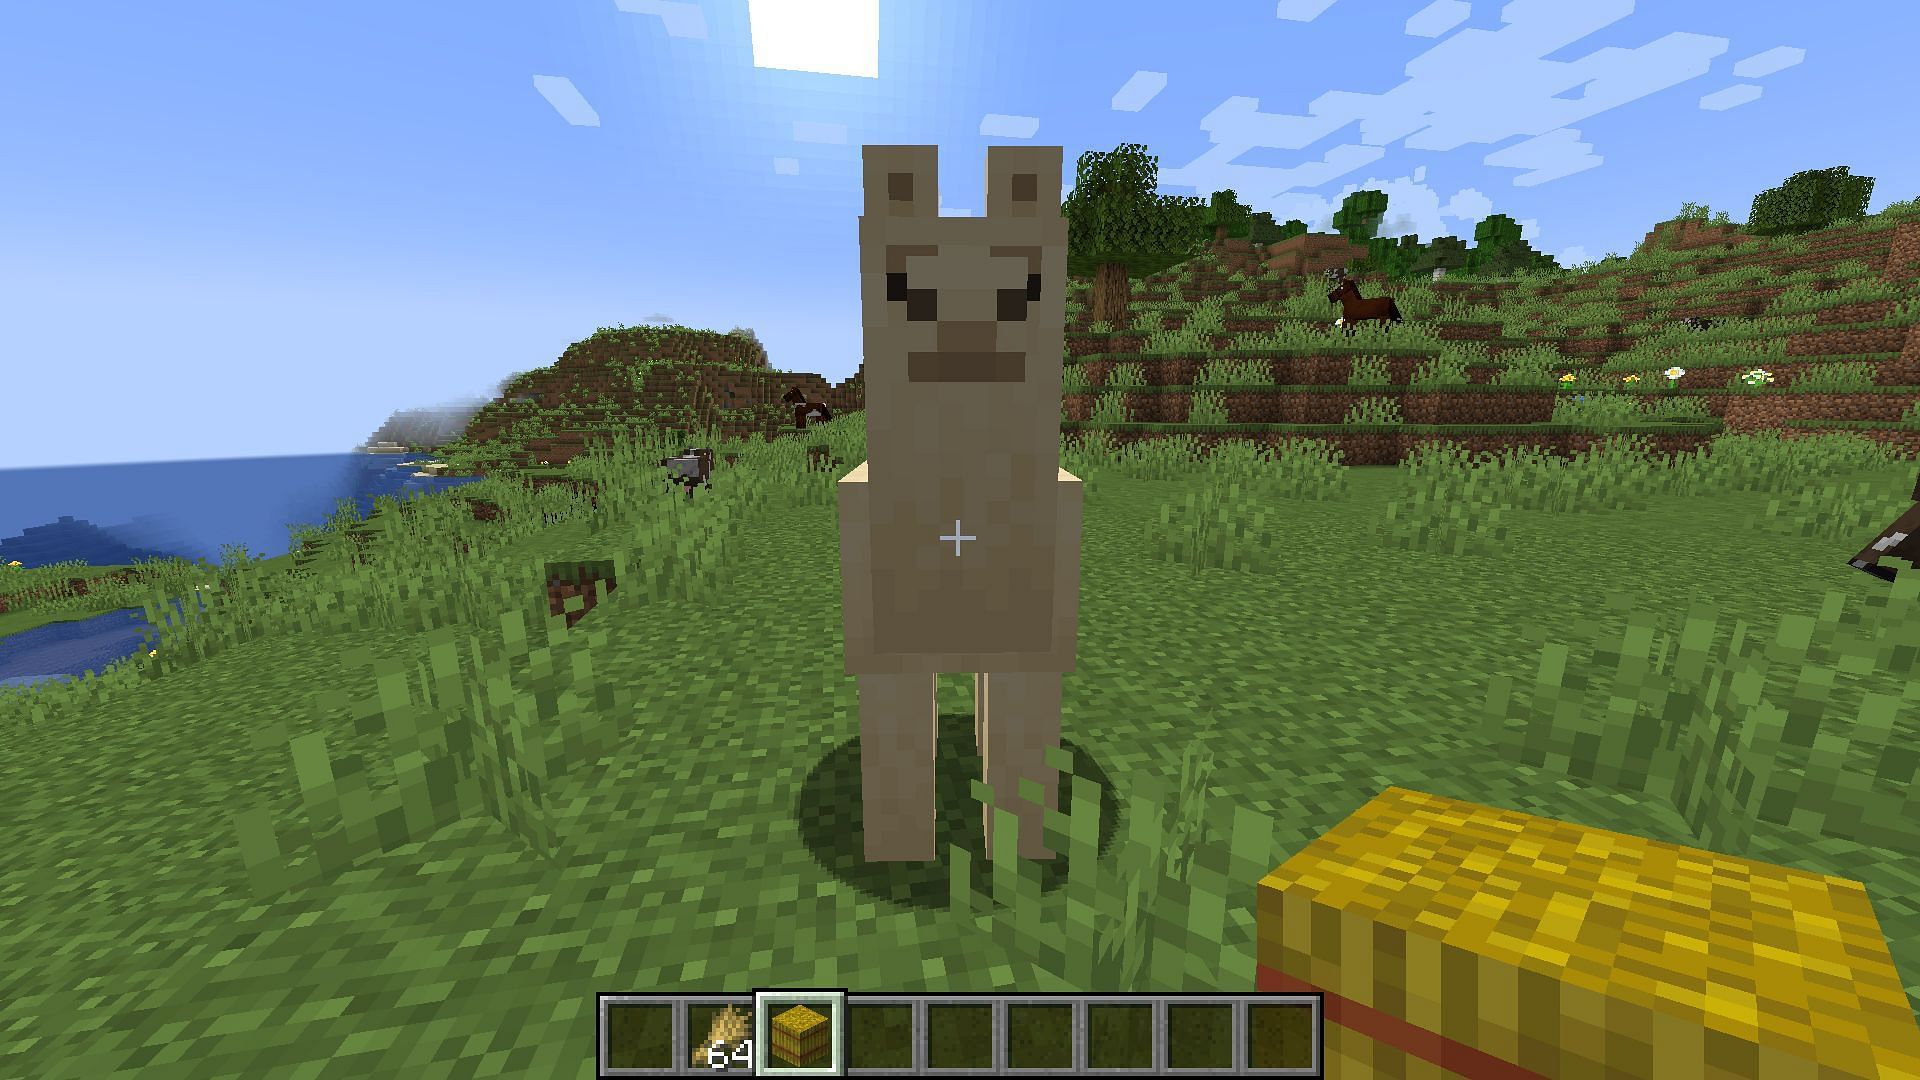 Llama in Minecraft (Image via Mojang)